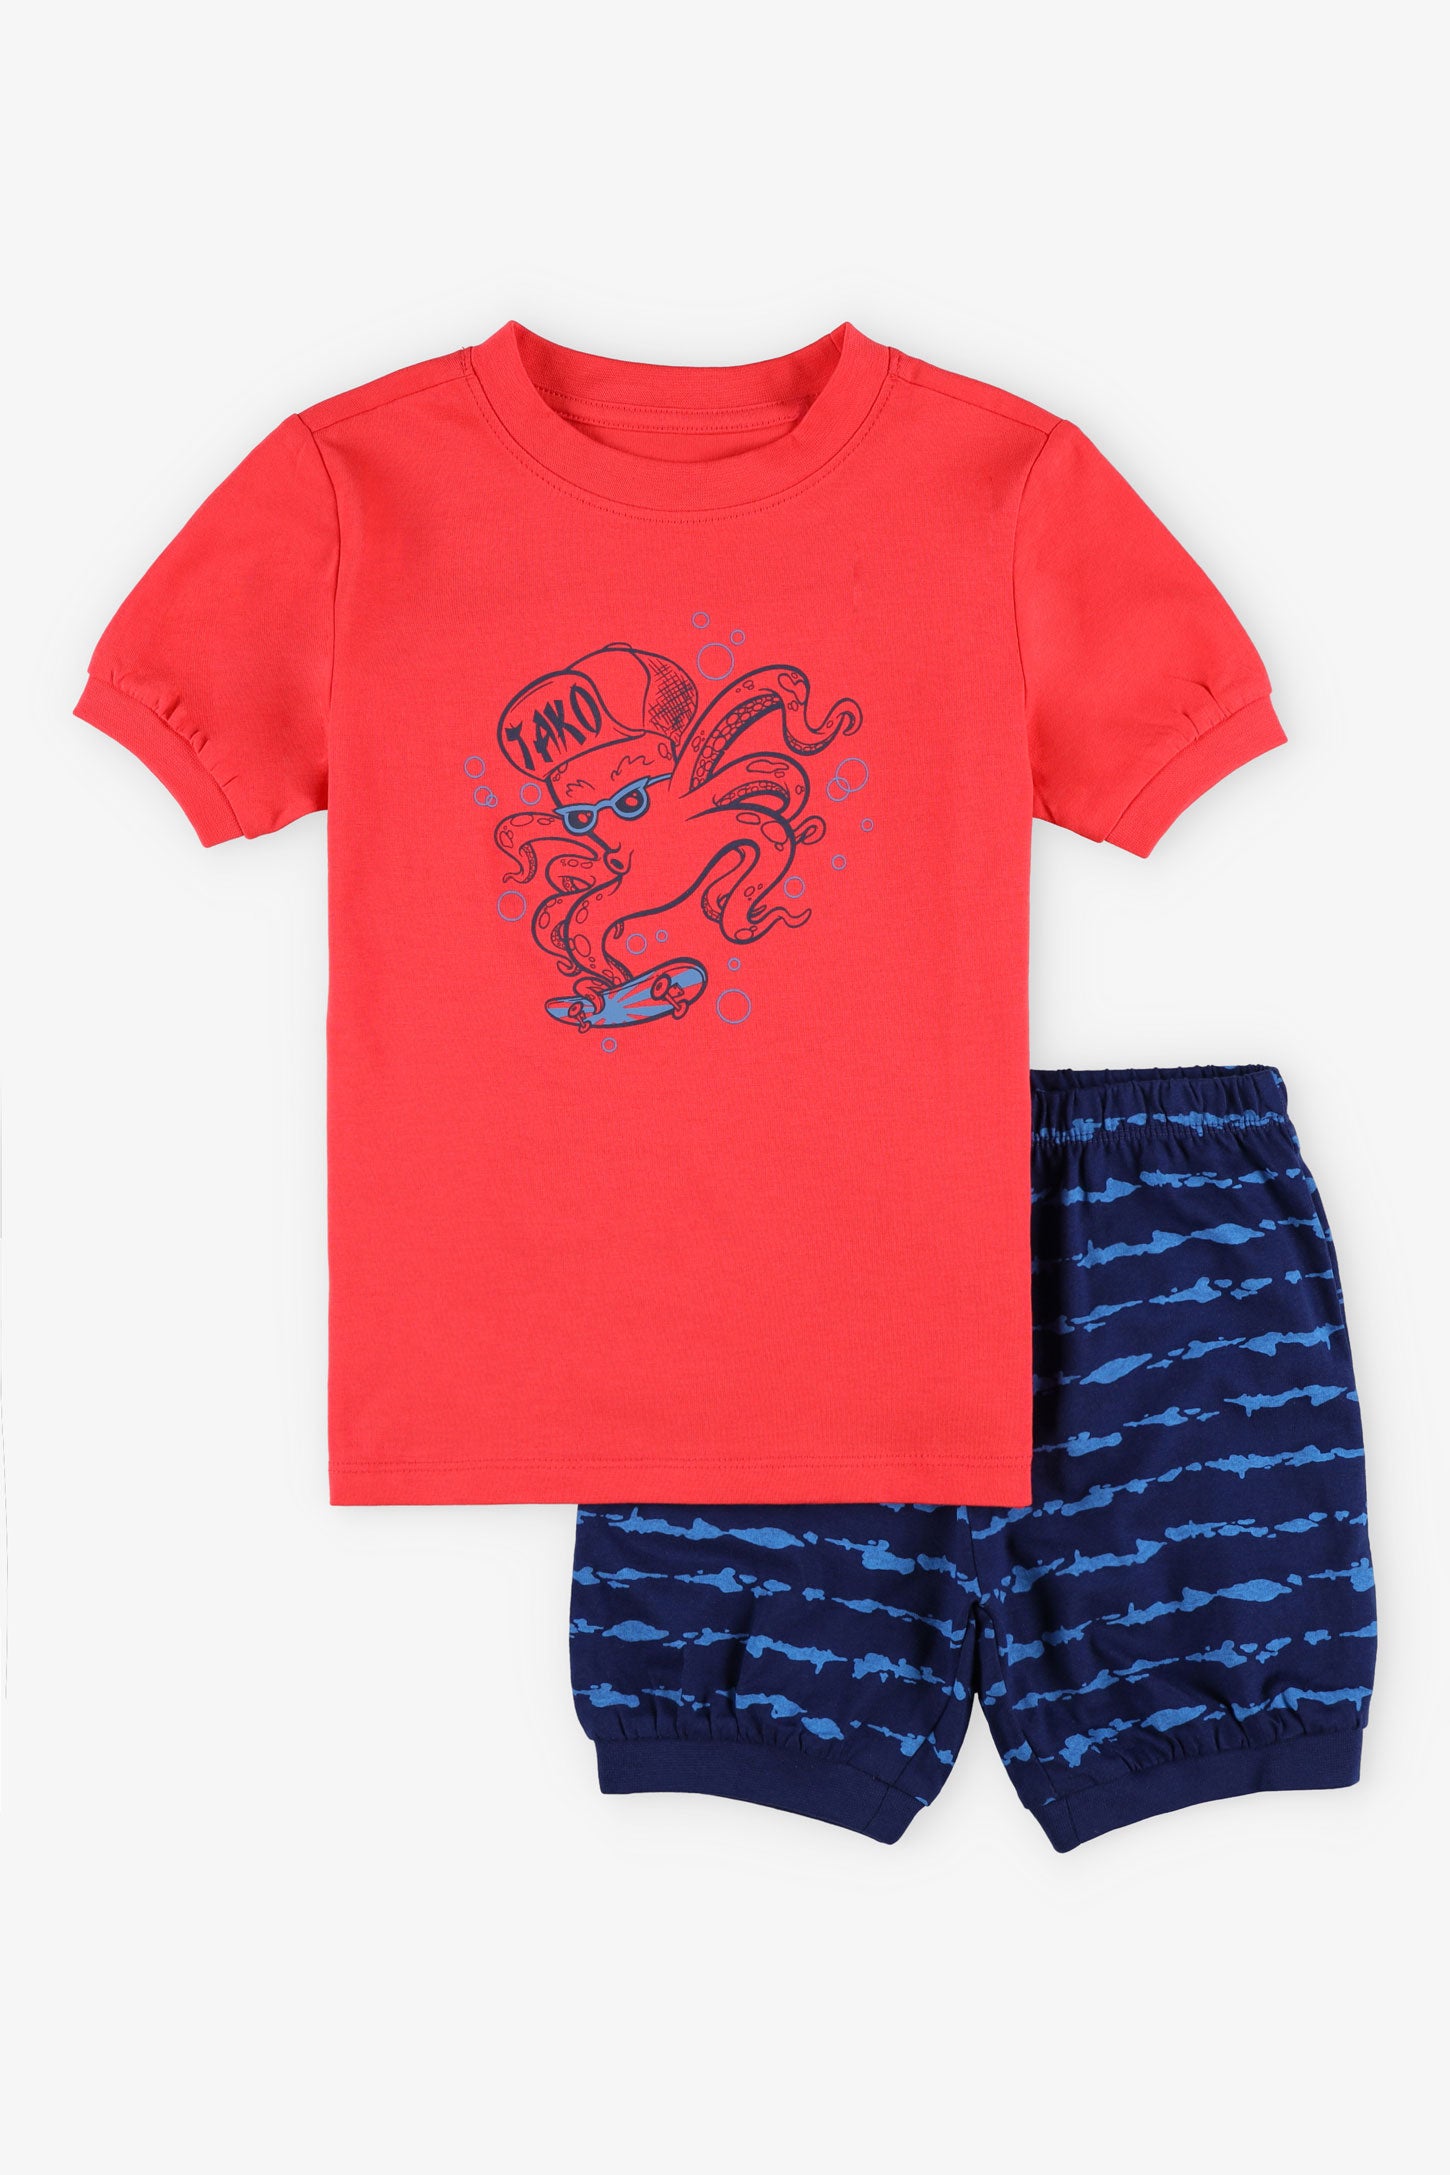 Pyjama 2-pièces t-shirt short coton, 2/35$ - Enfant garçon && ROUGE